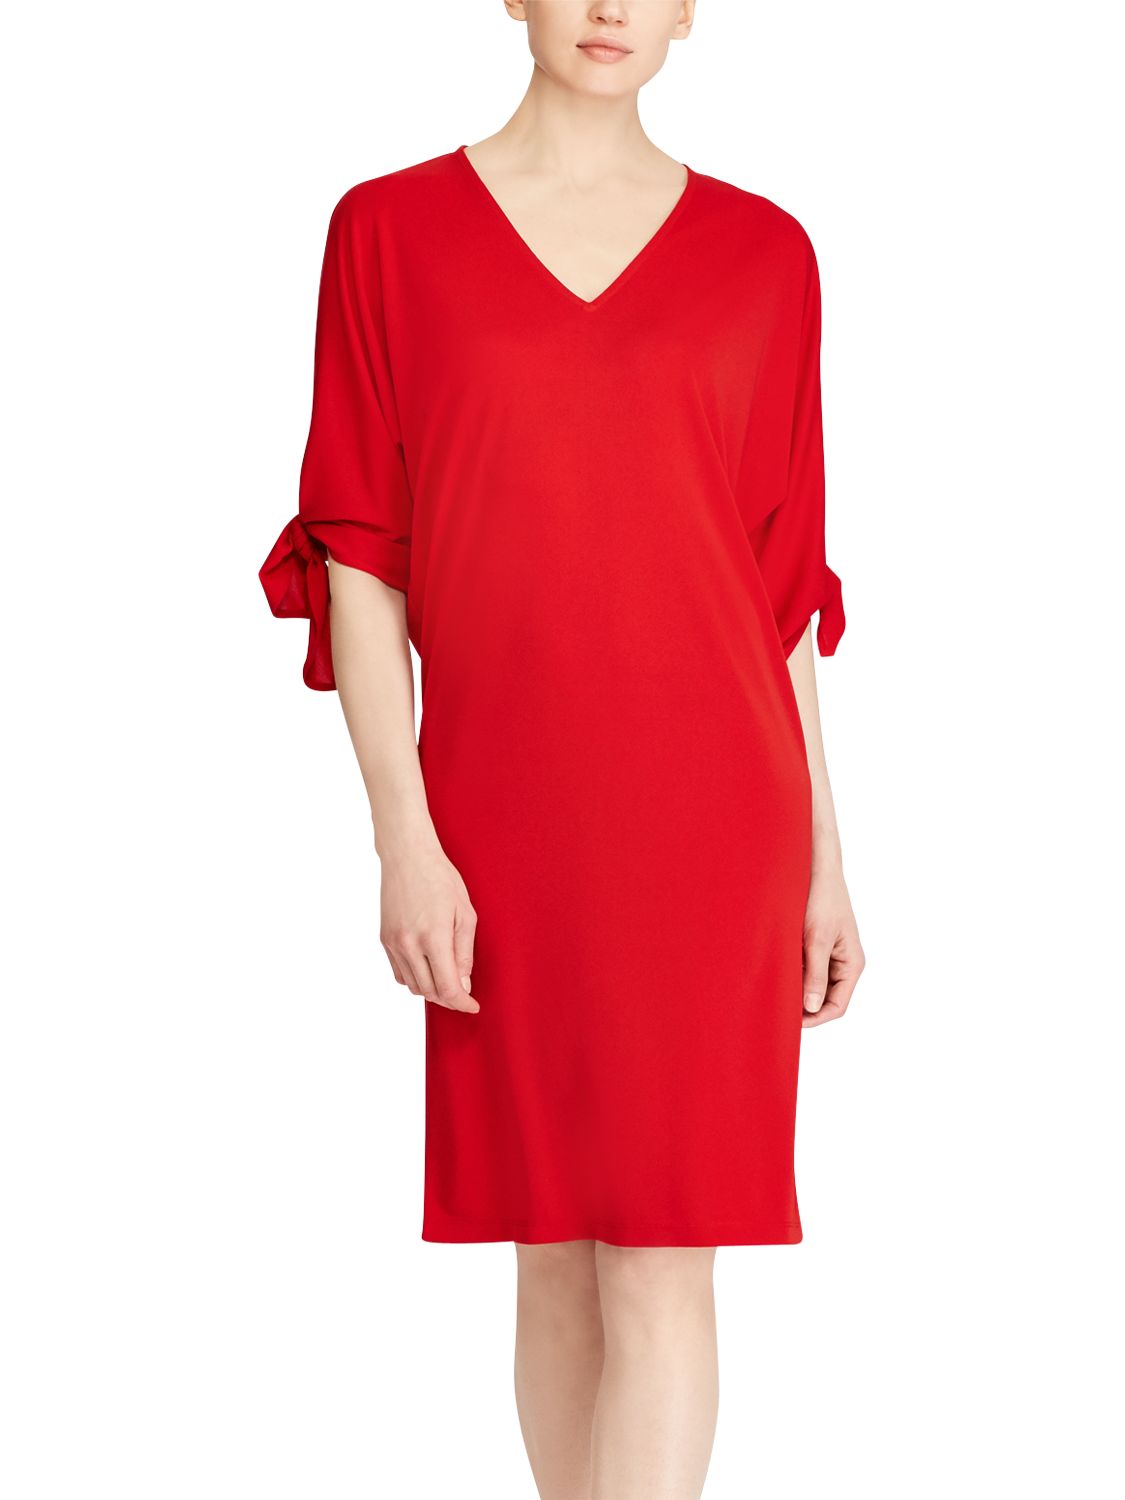 Lauren Ralph Lauren Kalbeck Casual Dress, Lipstick Red